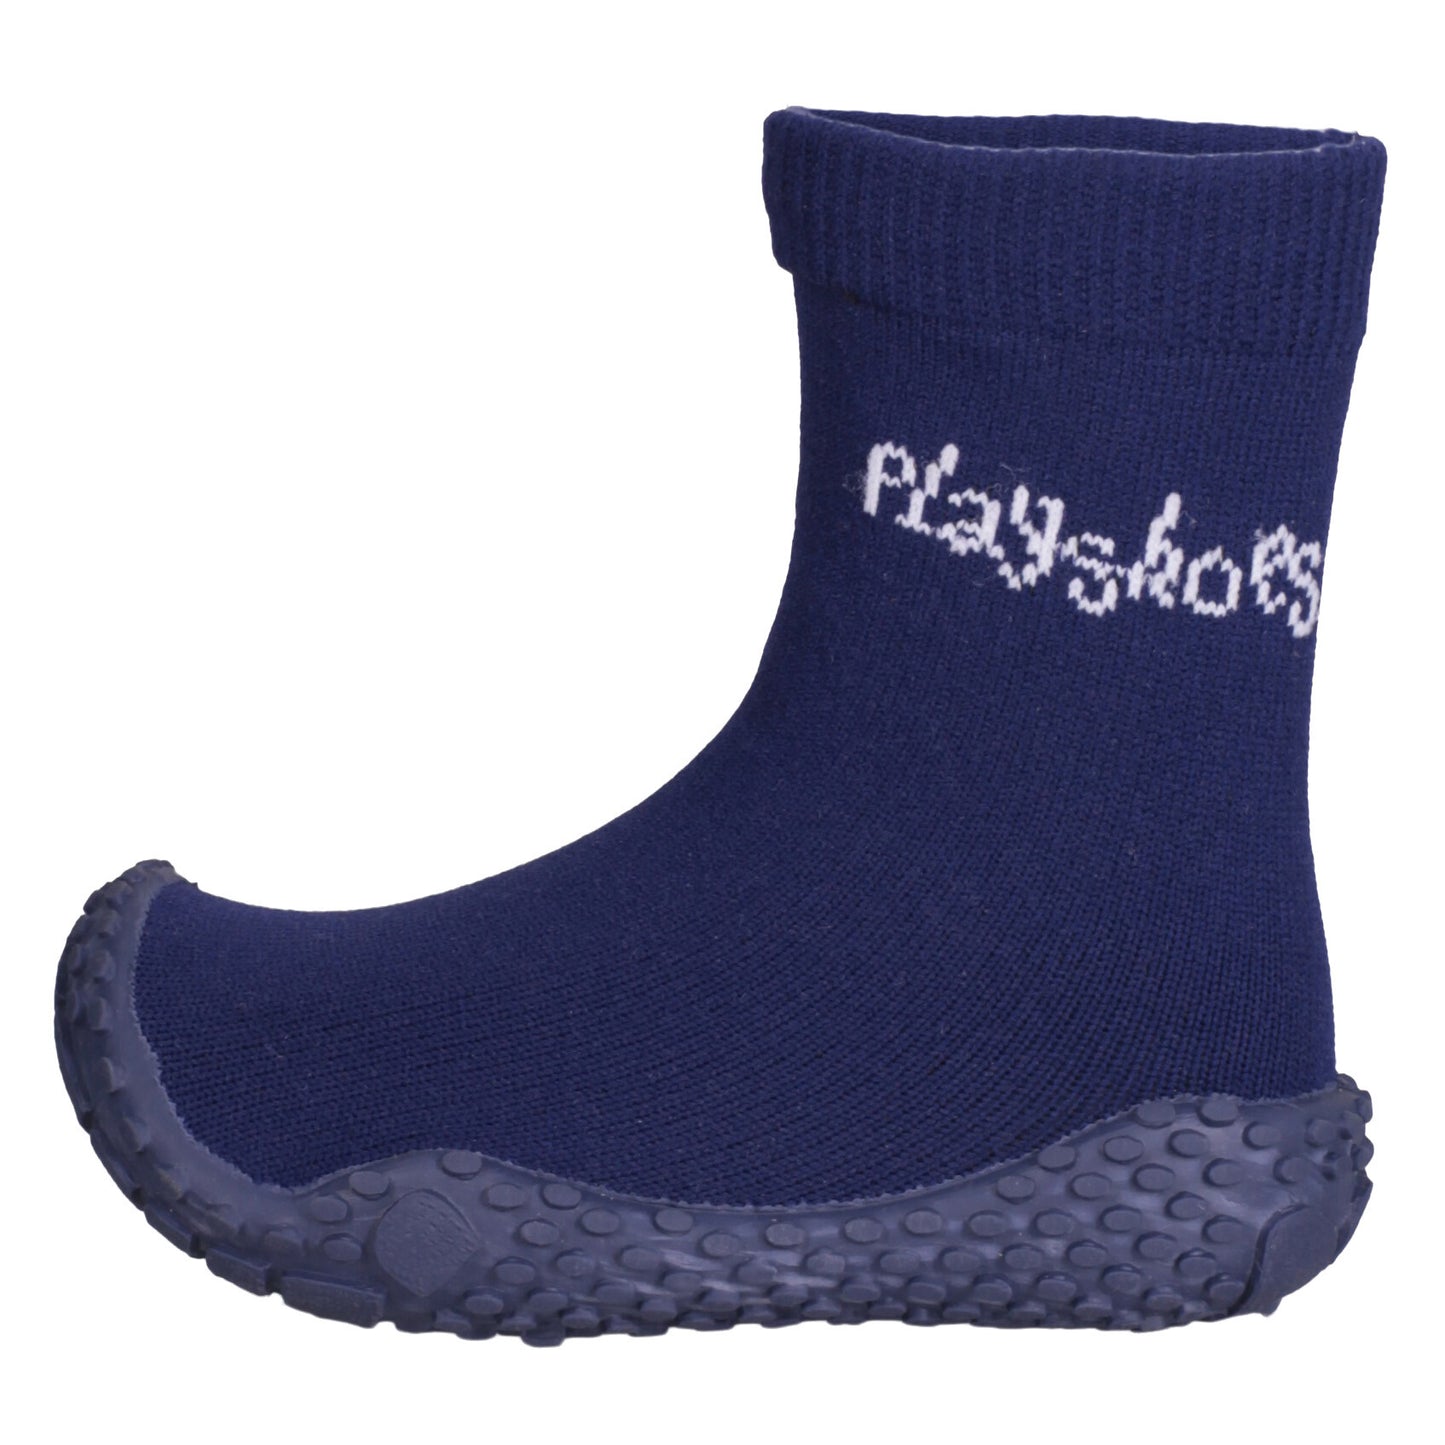 Playshoes - Watersokken voor kinderen - Marineblauw